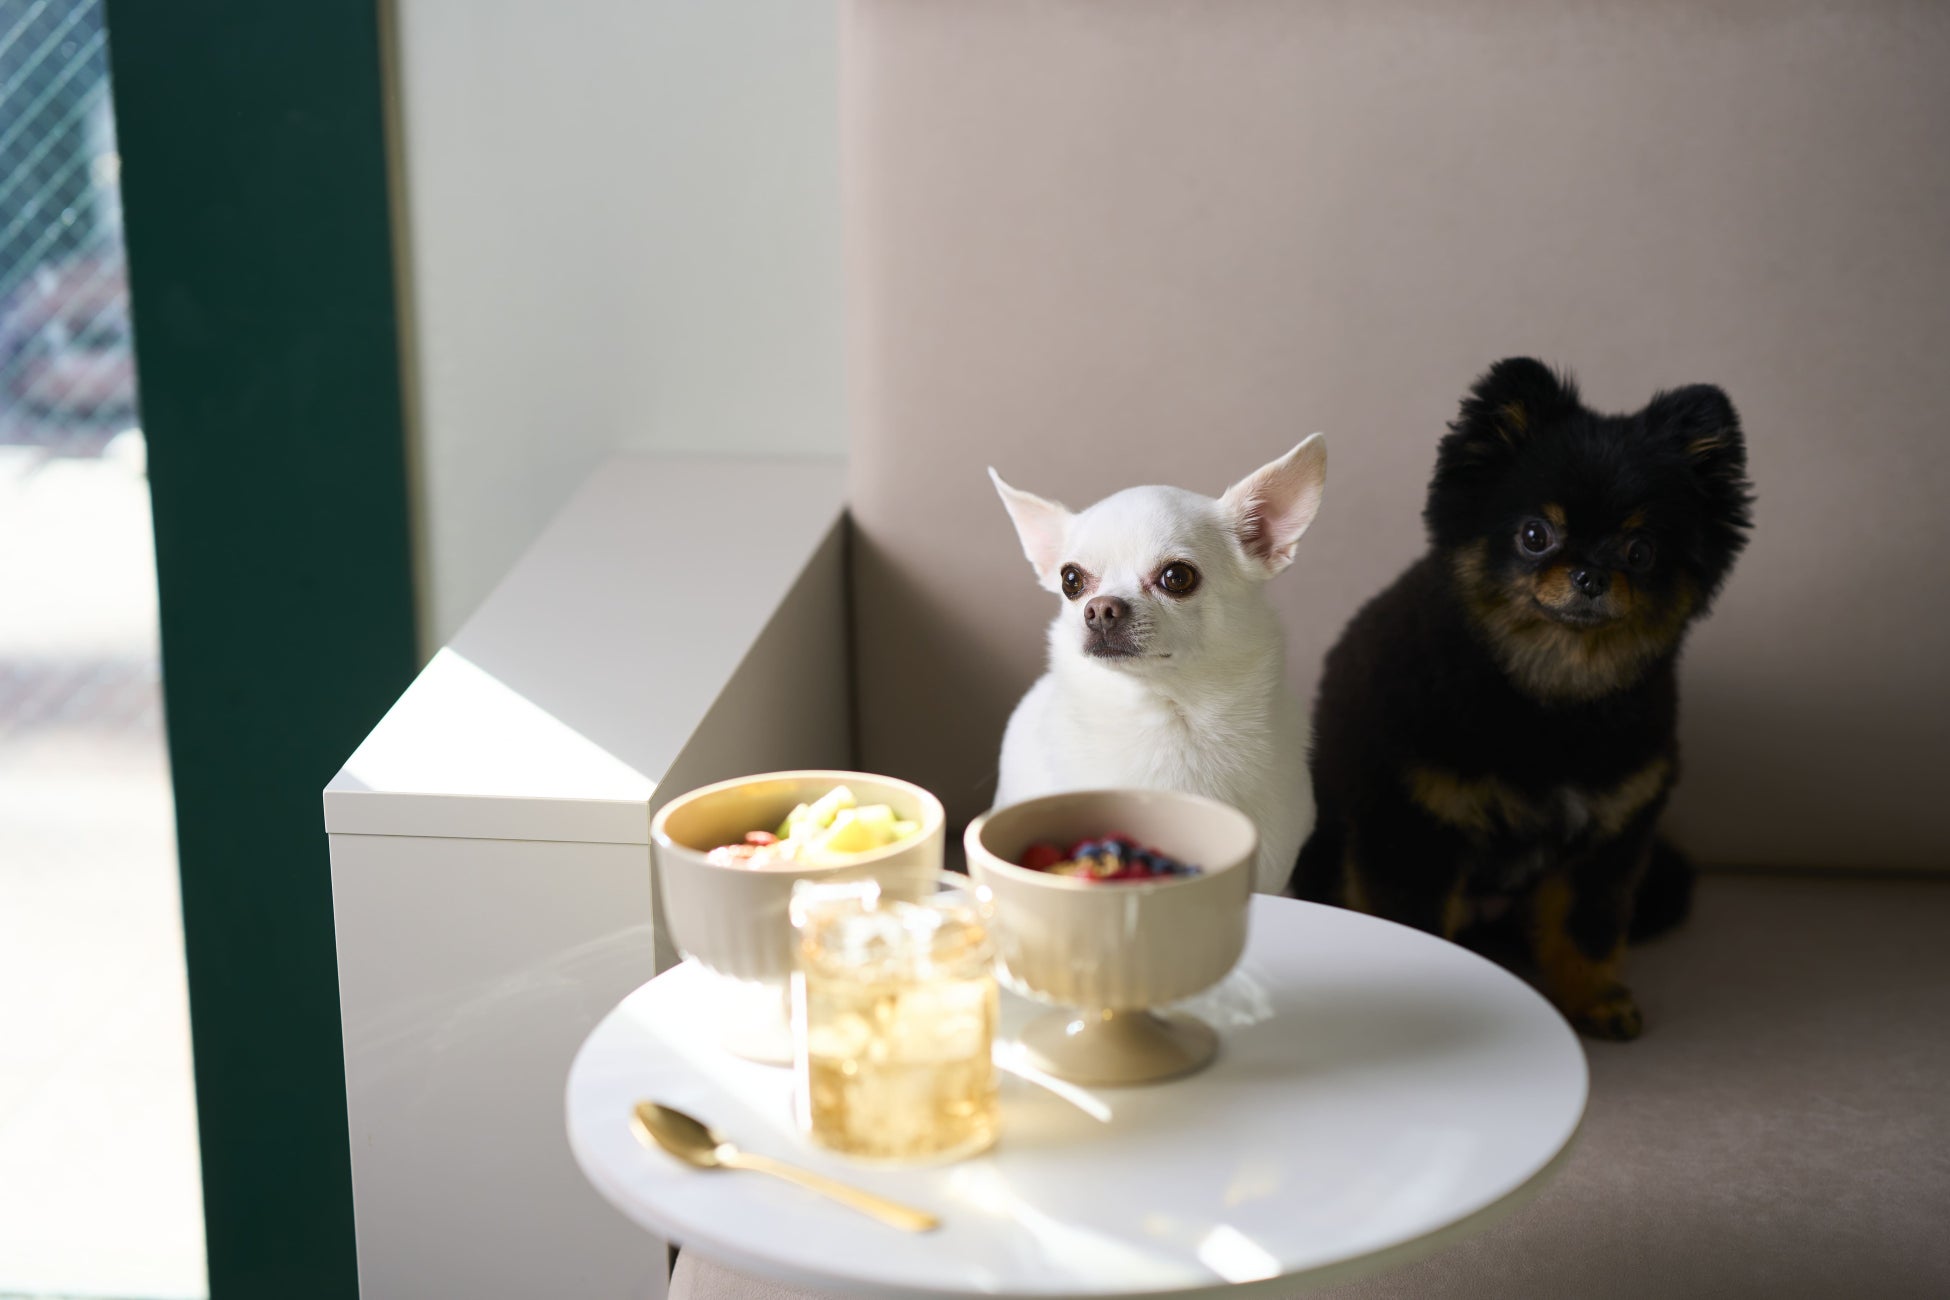 腸活グリークヨーグルト専門店『REM’S greek yogurt』が六本木に3月15日オープン